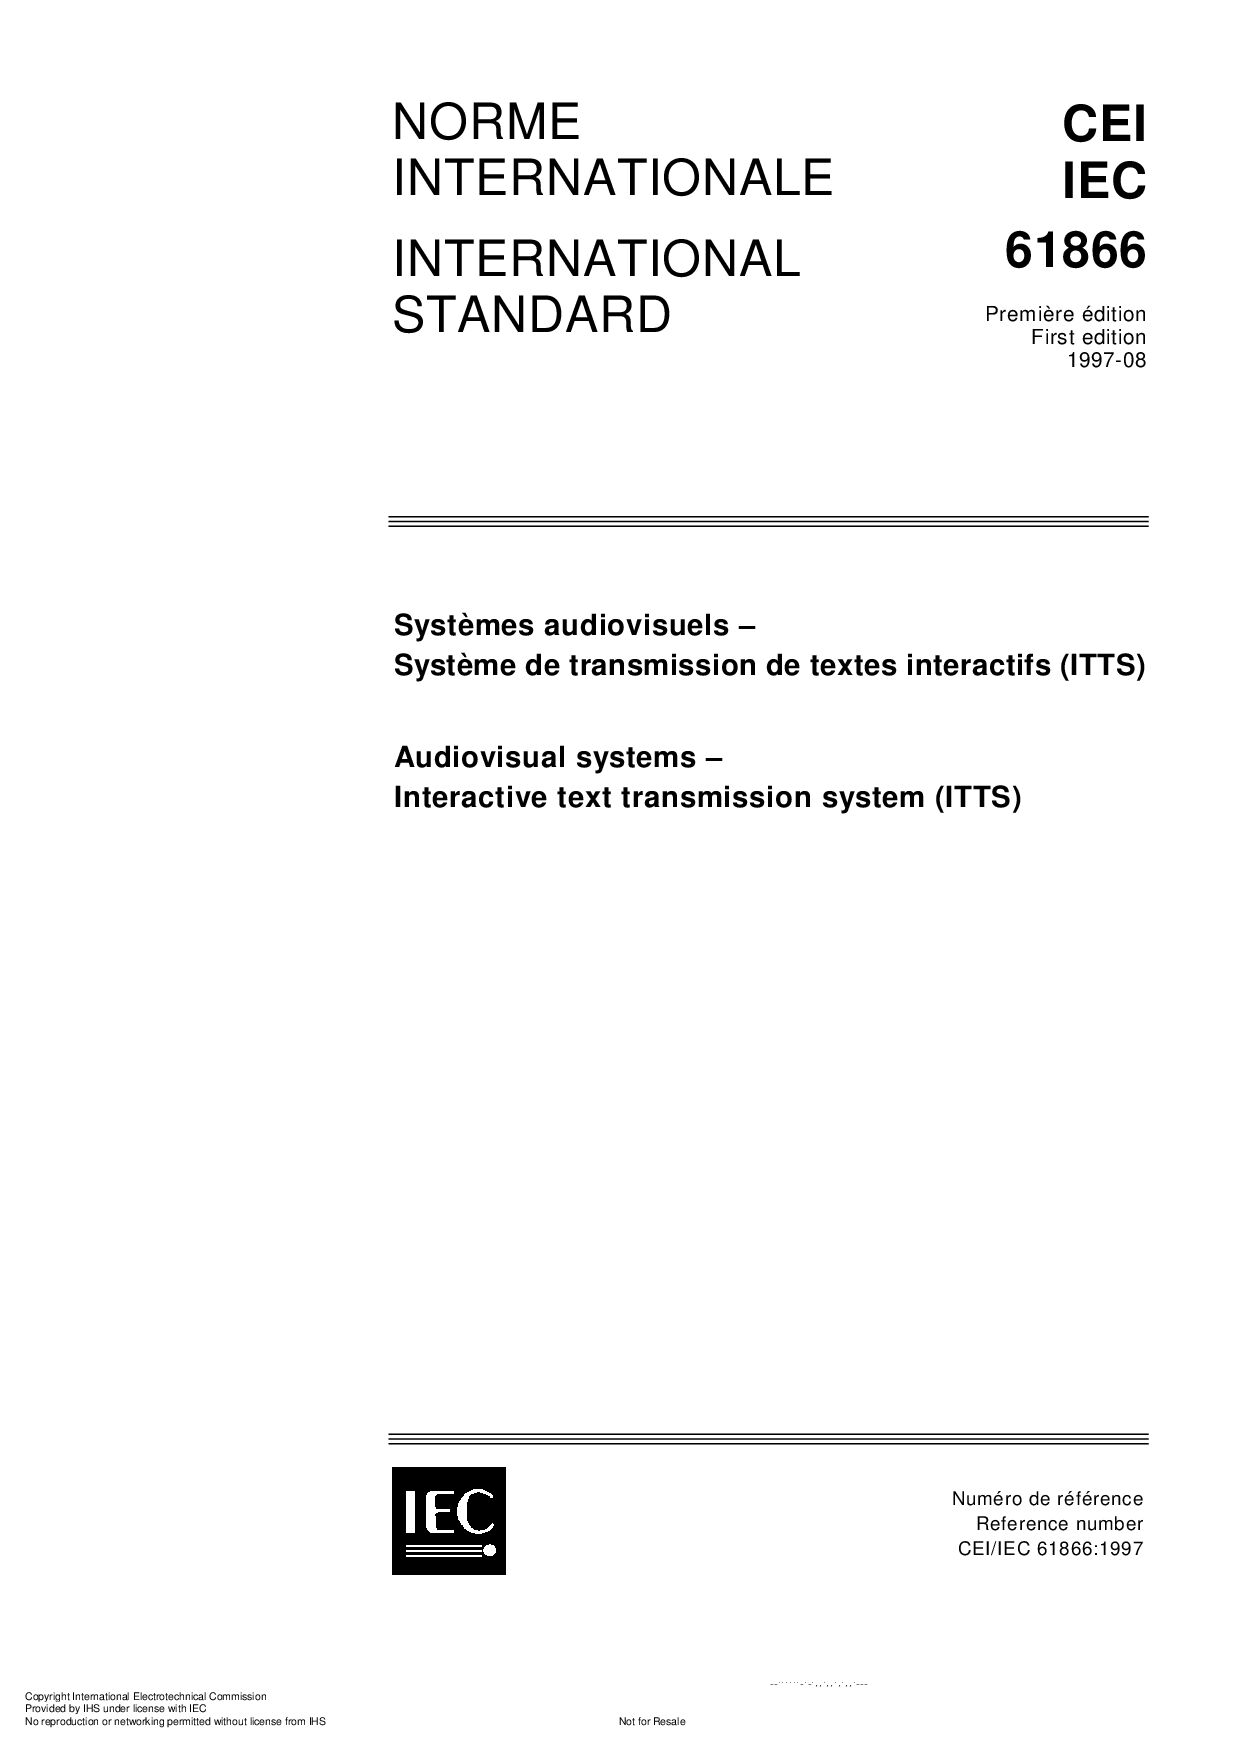 IEC 61866:1997